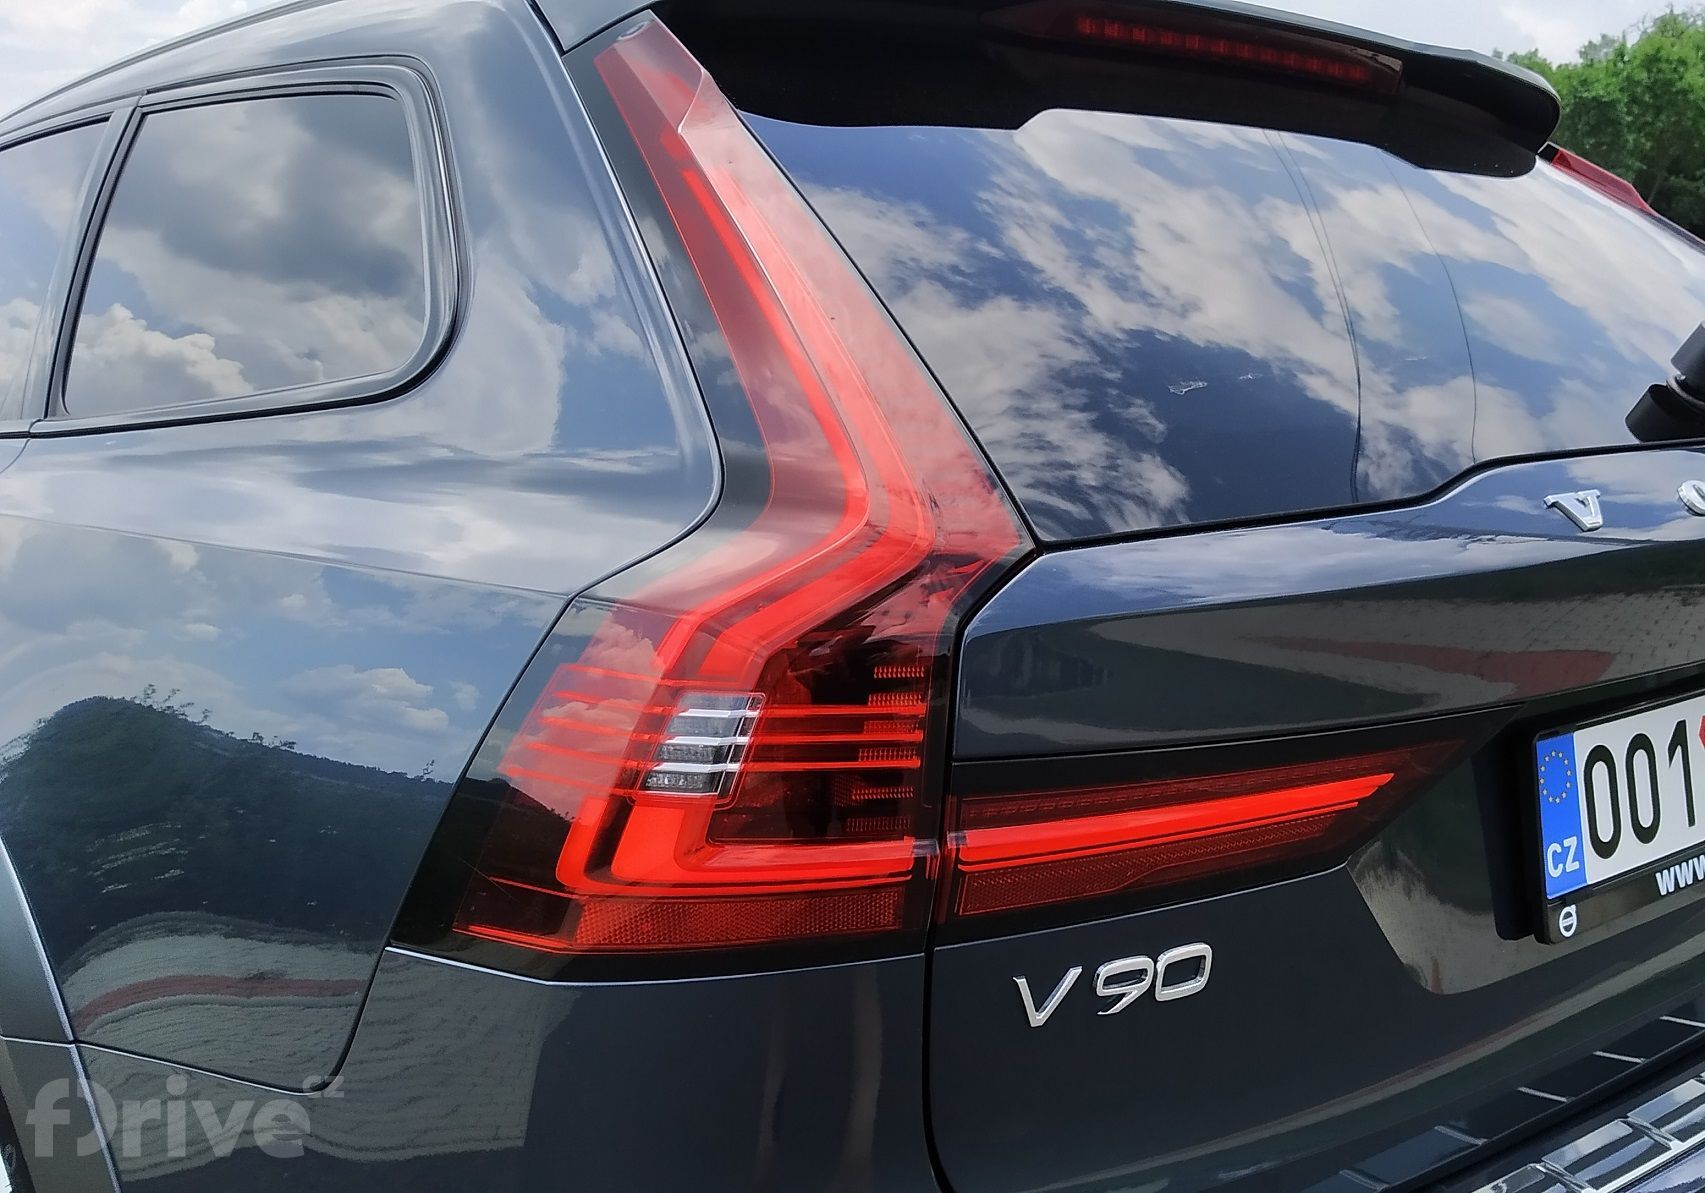 Volvo V90 Cross Country B5 (2021)